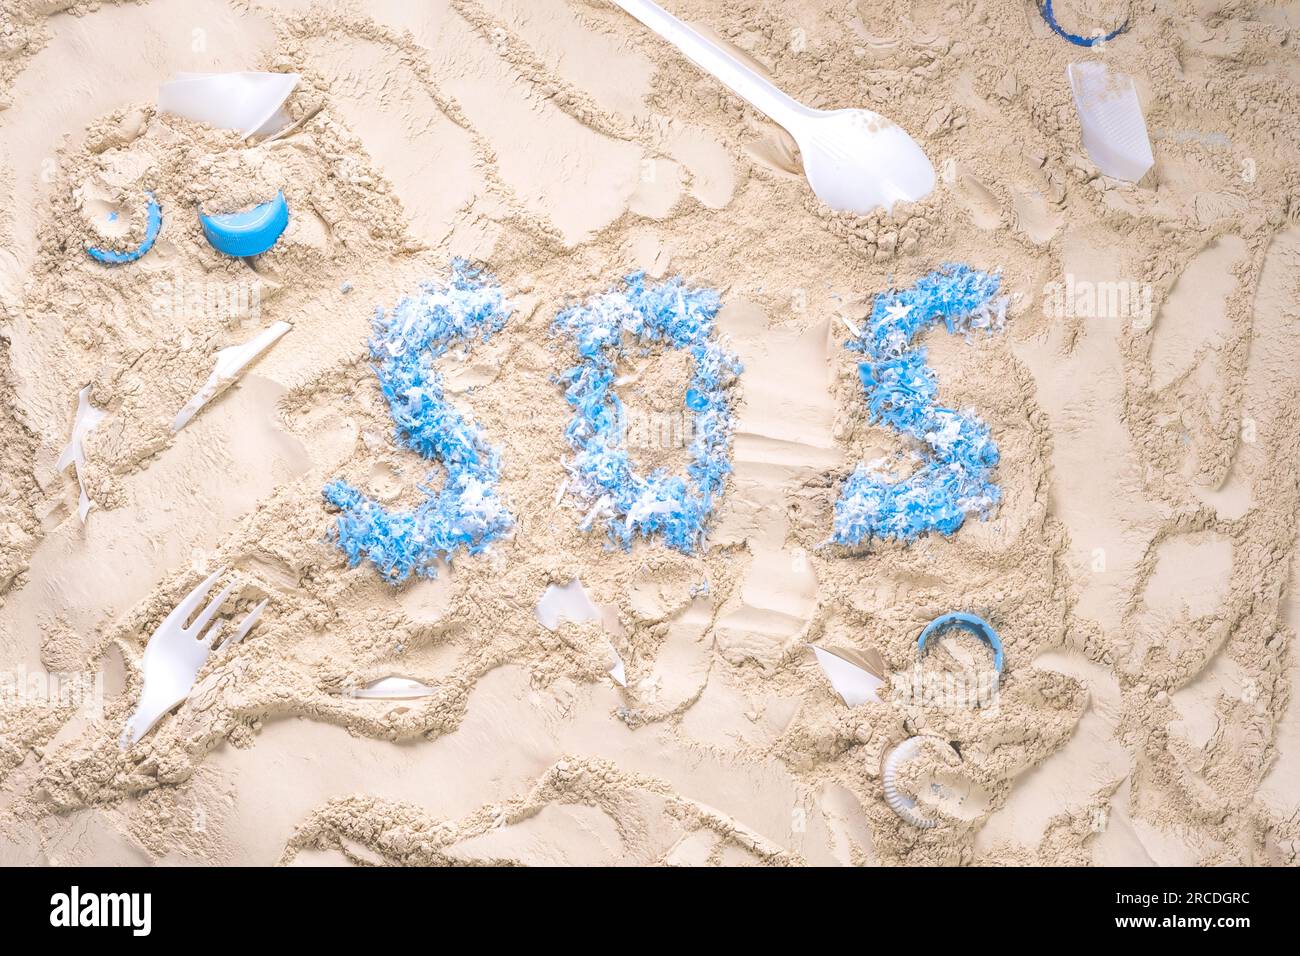 SOS-Wort mit blauen Plastikstücken auf dem Sand. Hilfe! Hilfe! Rette den Ozean. Der Begriff der Verschmutzung und die Abhängigkeit von Kunststoff. Stockfoto